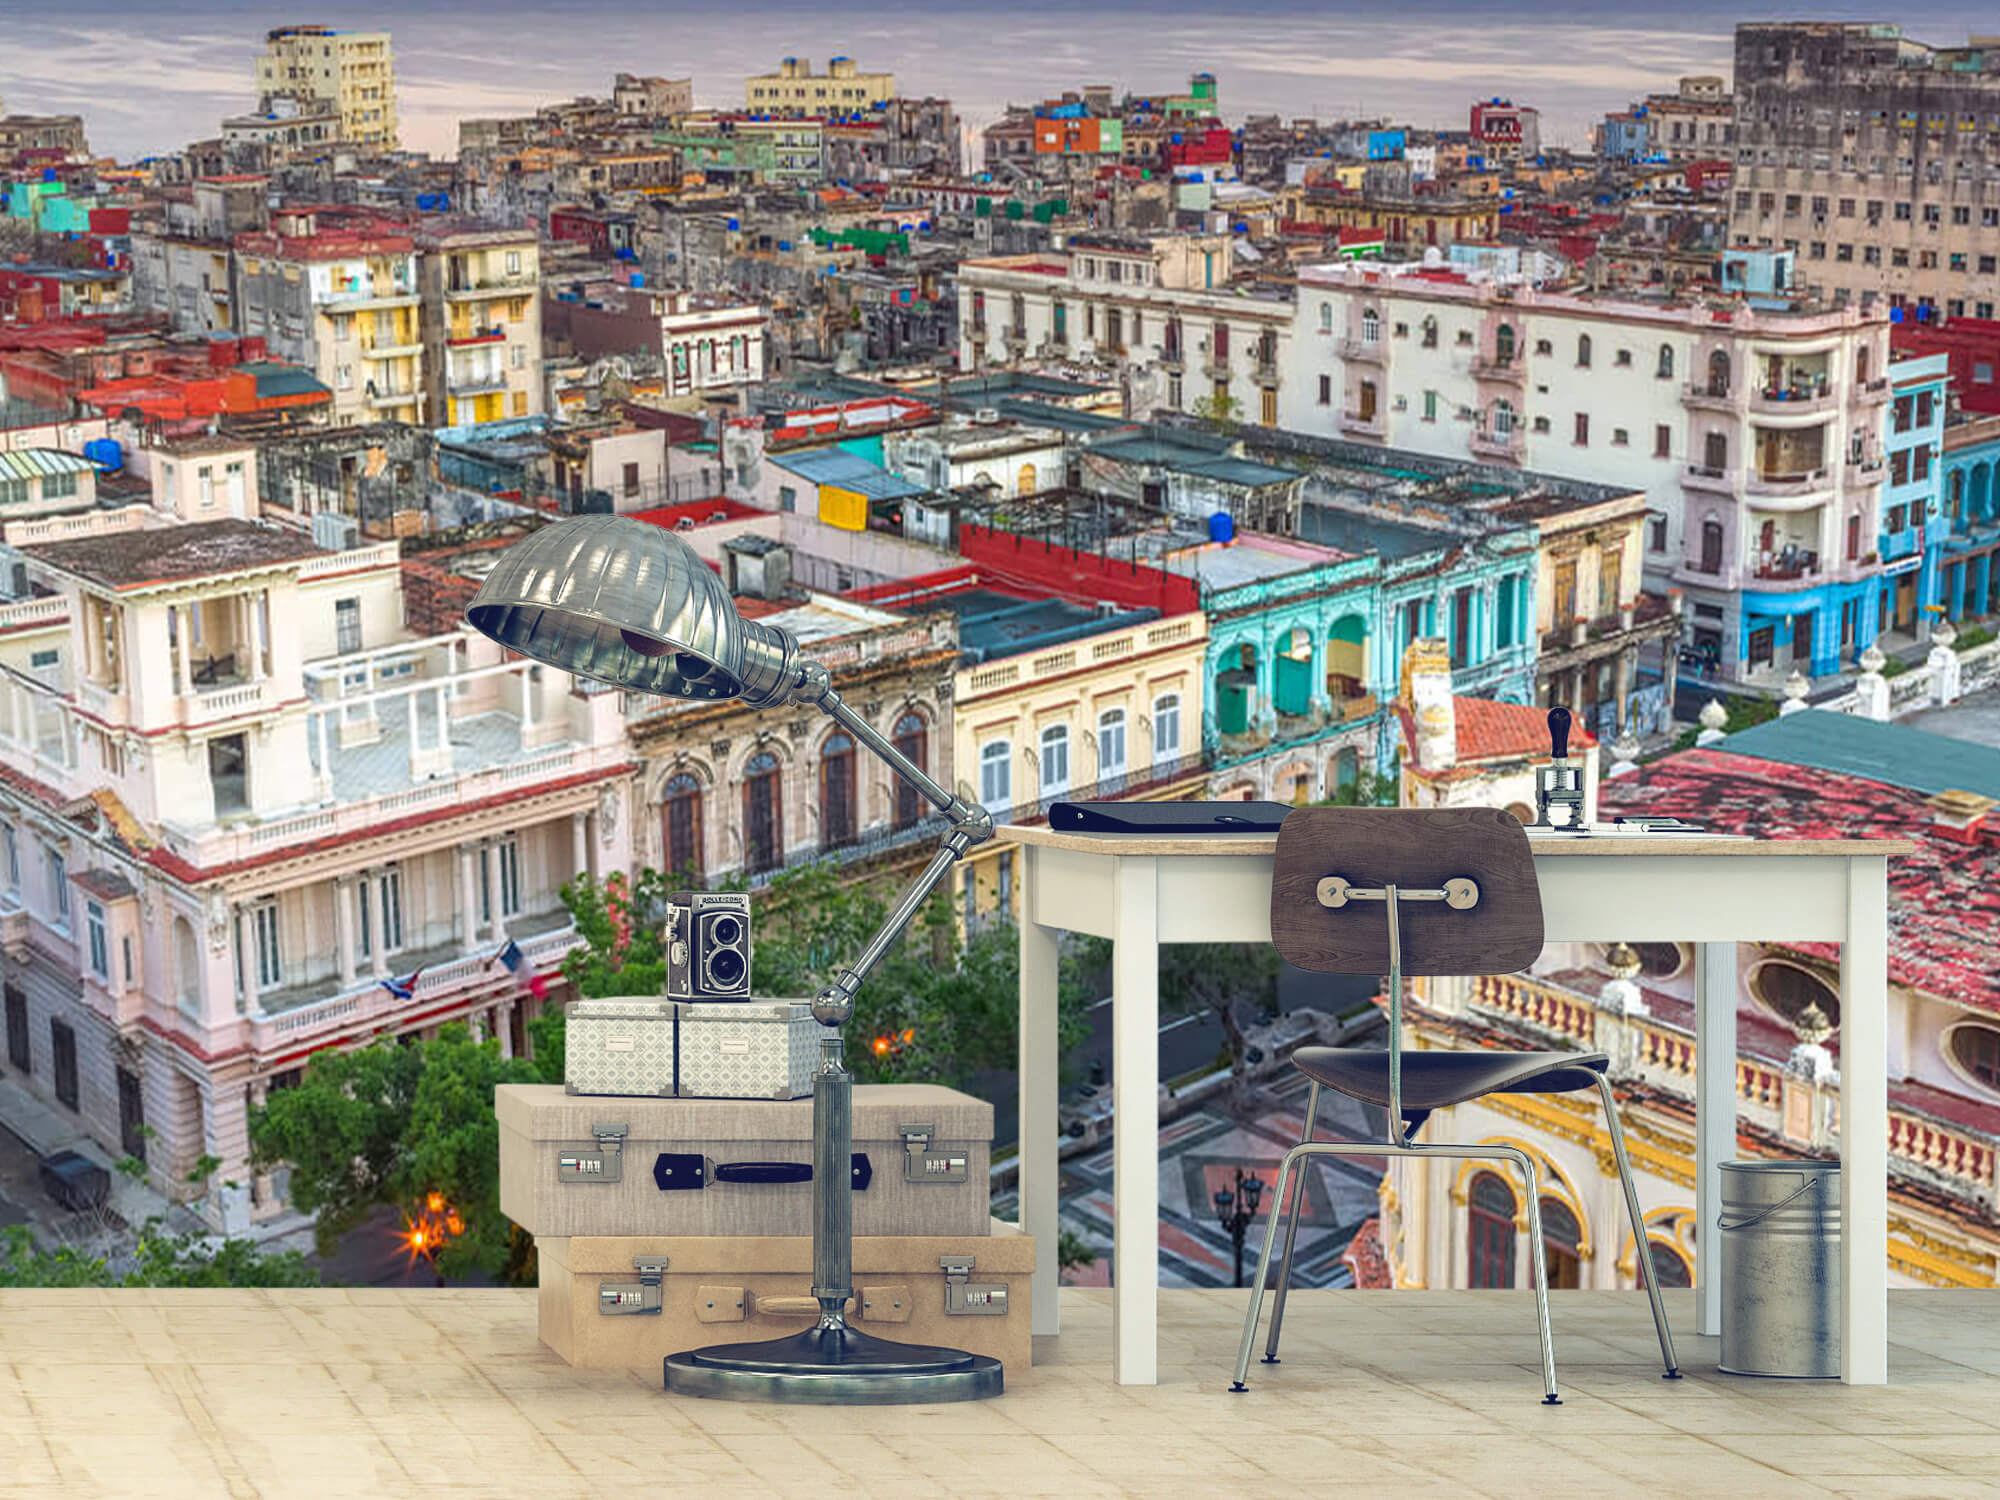  Papel pintado con La Habana desde arriba - Salón 11